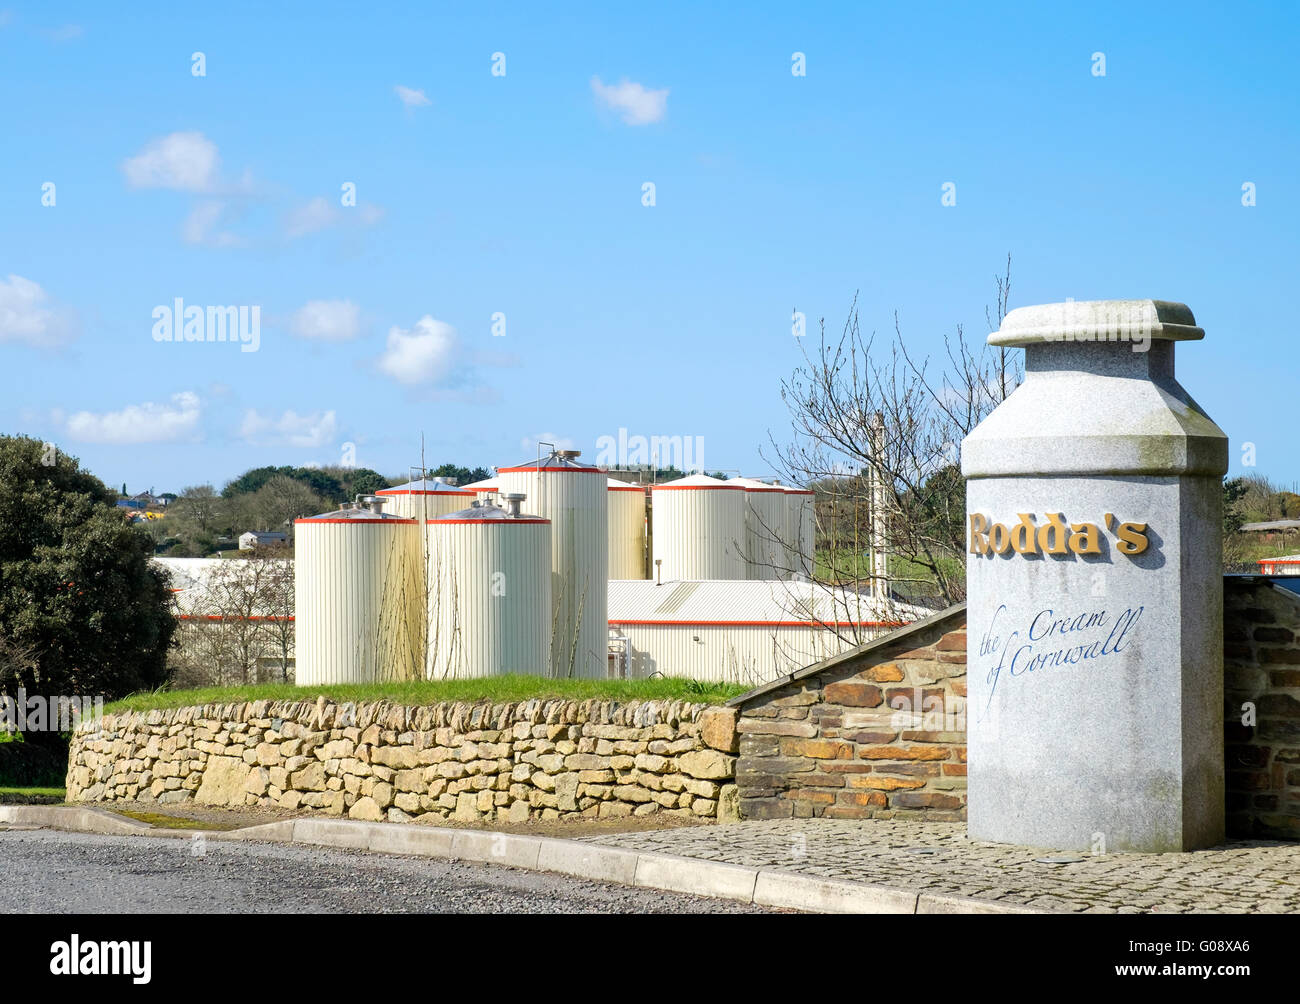 Rhoddas Molkerei in der Nähe von Redruth in Cornwall, UK, Hersteller von Cornish Clotted Cream. Stockfoto